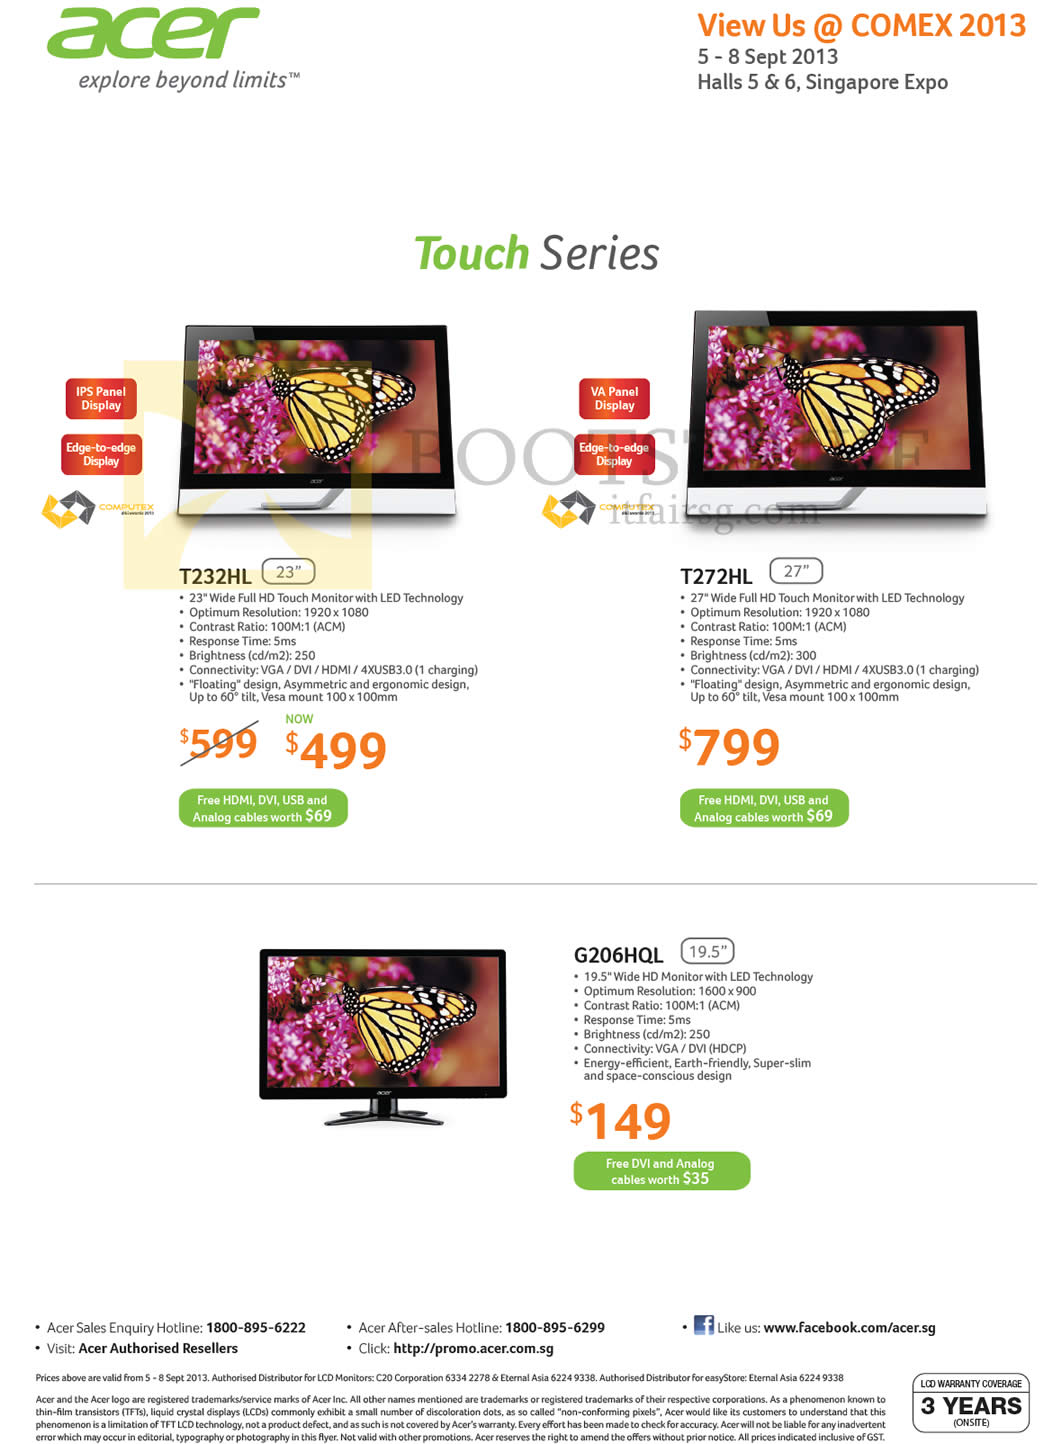 COMEX 2013 price list image brochure of Acer Monitors LED T232HL, T272HL, G206HQL